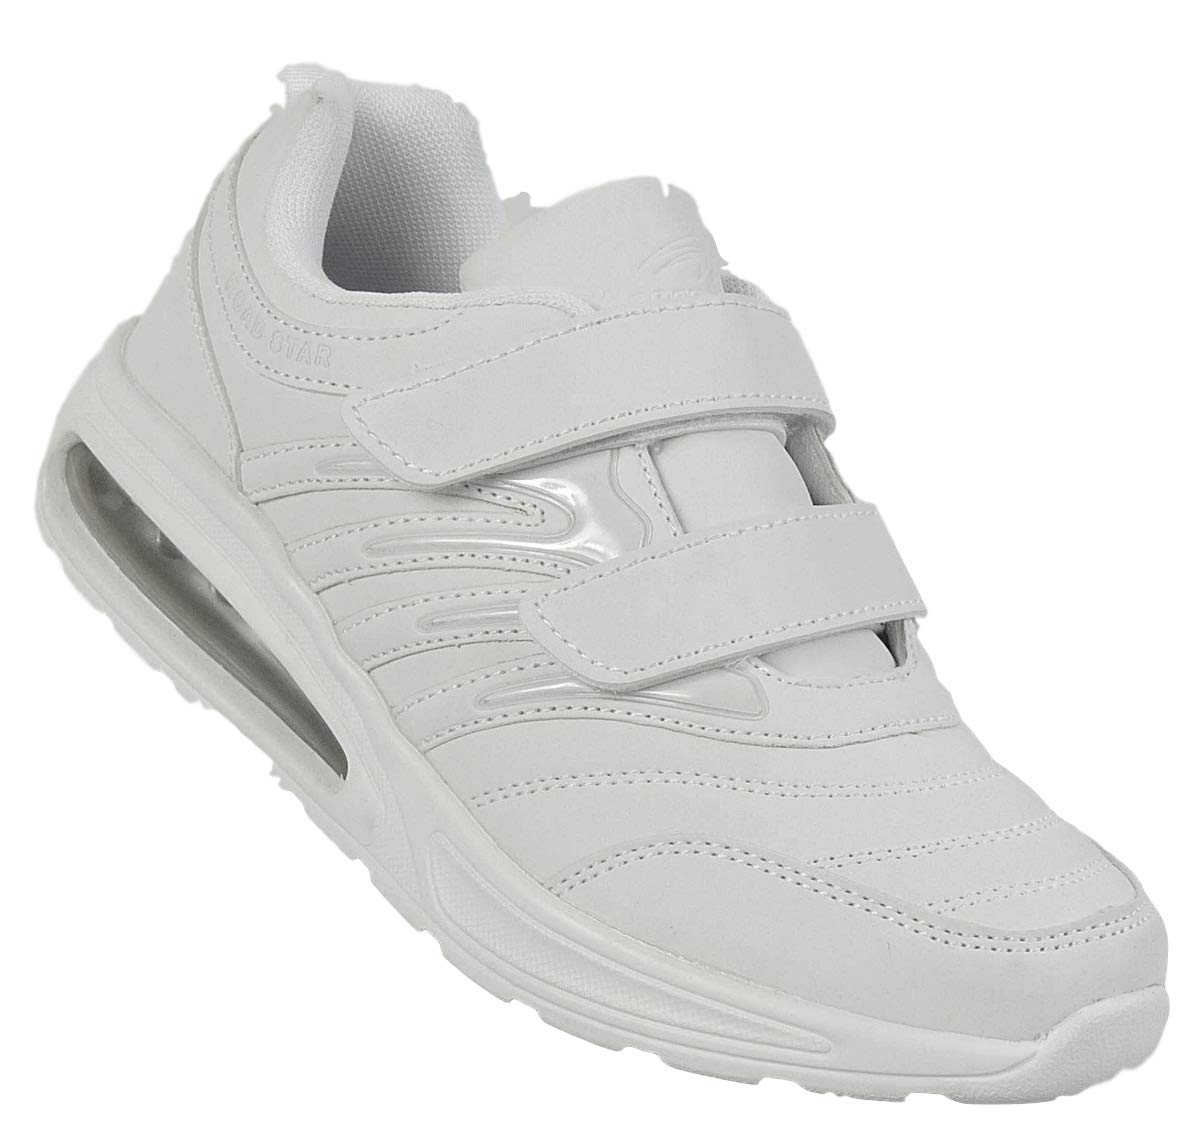 Bootsland Unisex Klett Sportschuhe Sneaker Turnschuhe Freizeitschuhe 001, Schuhgröße:45, Farbe:Weiß